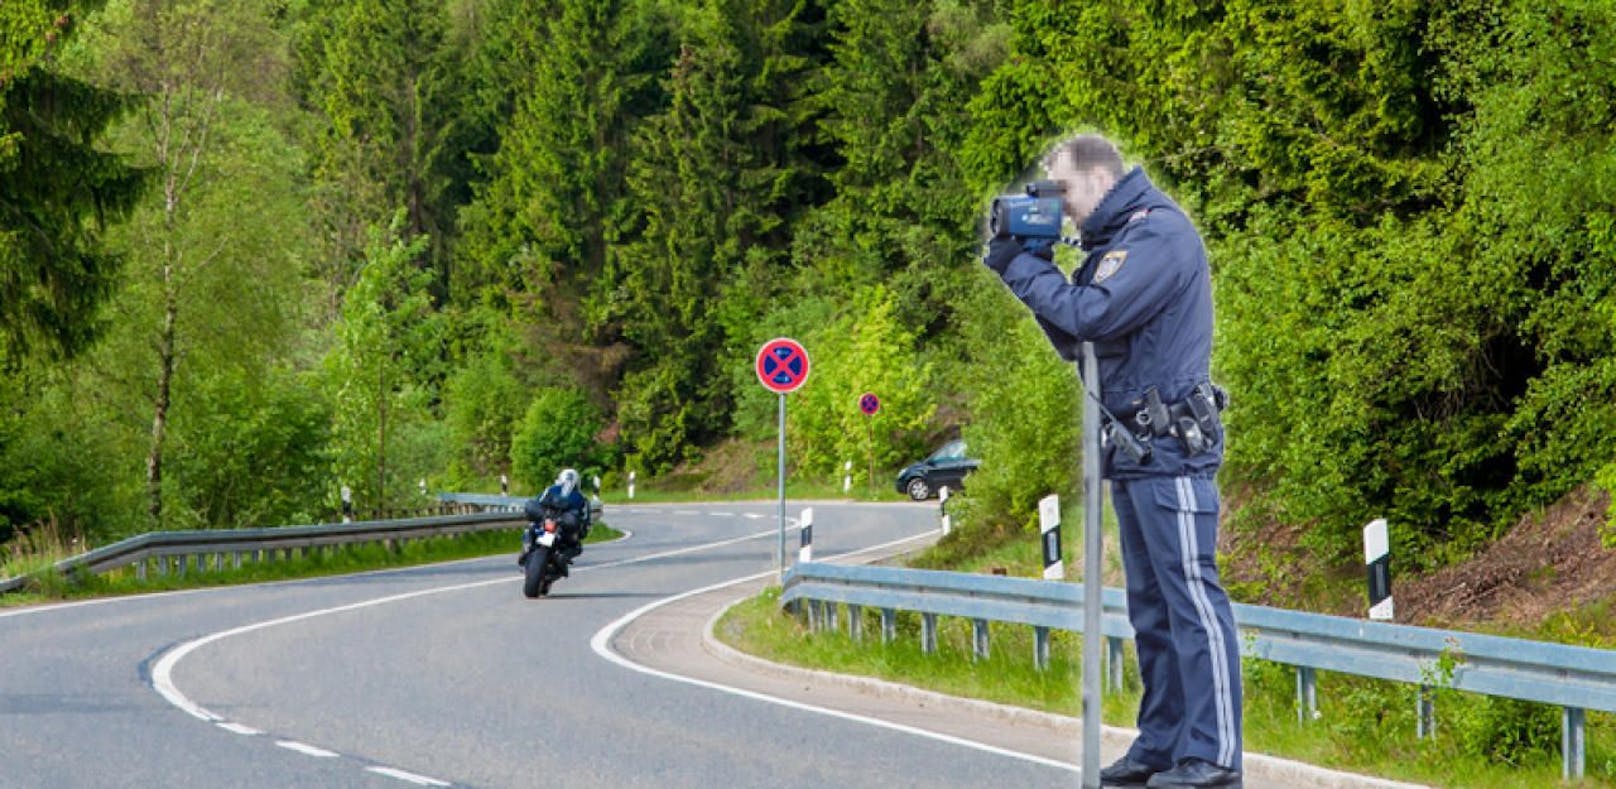 Symbolfoto eines Polizisten bzw. eines Bikers.